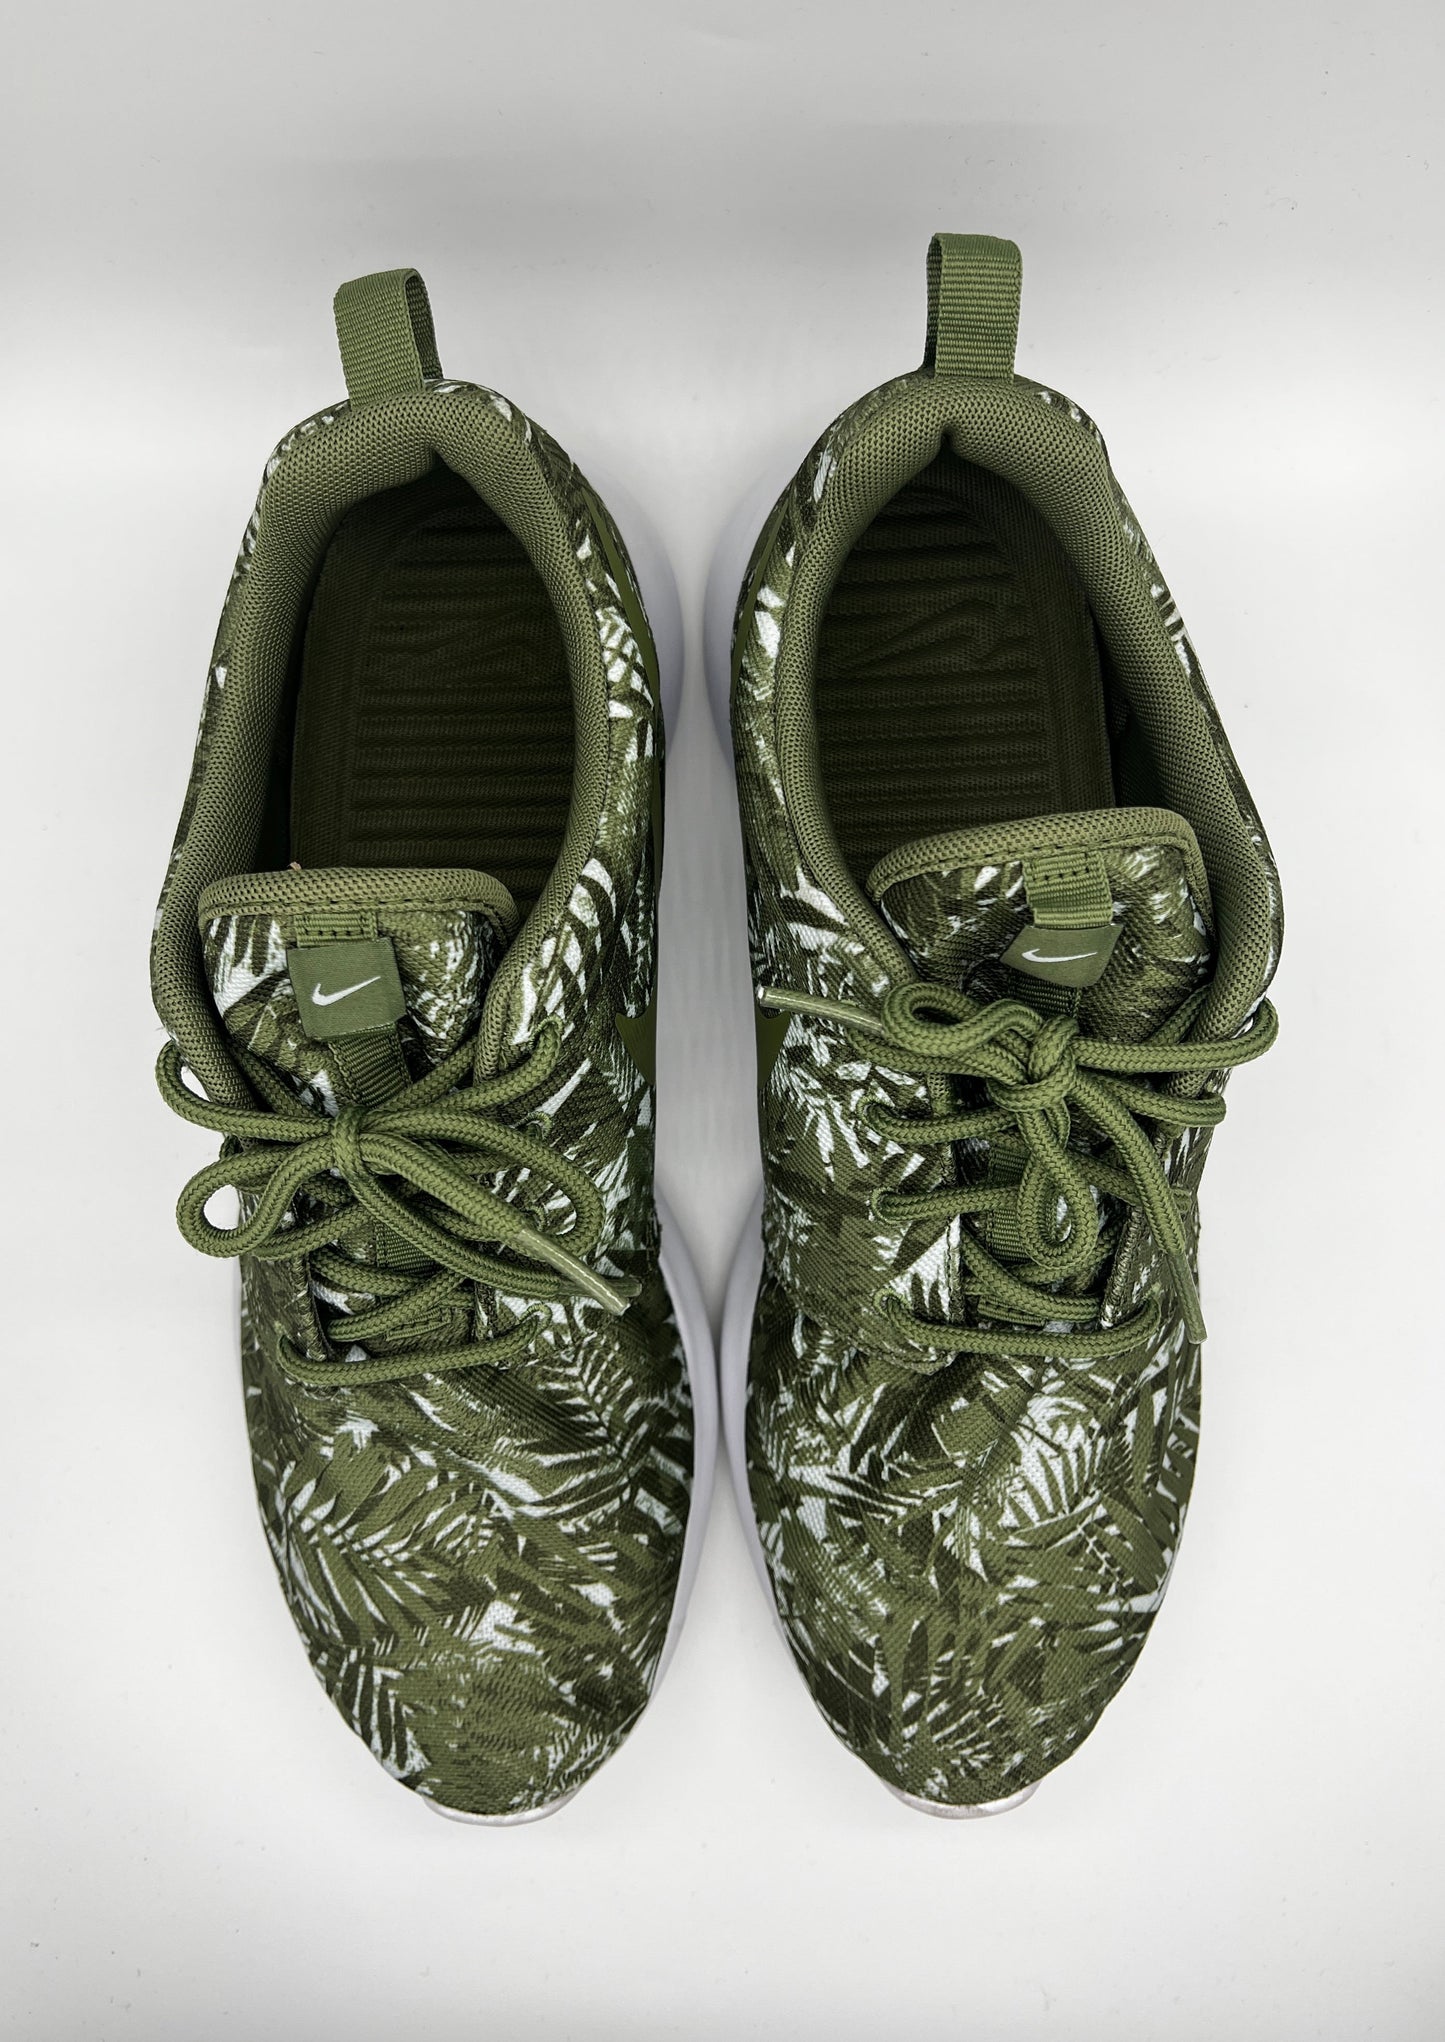 Roshe One Print Green Leaves By Nike